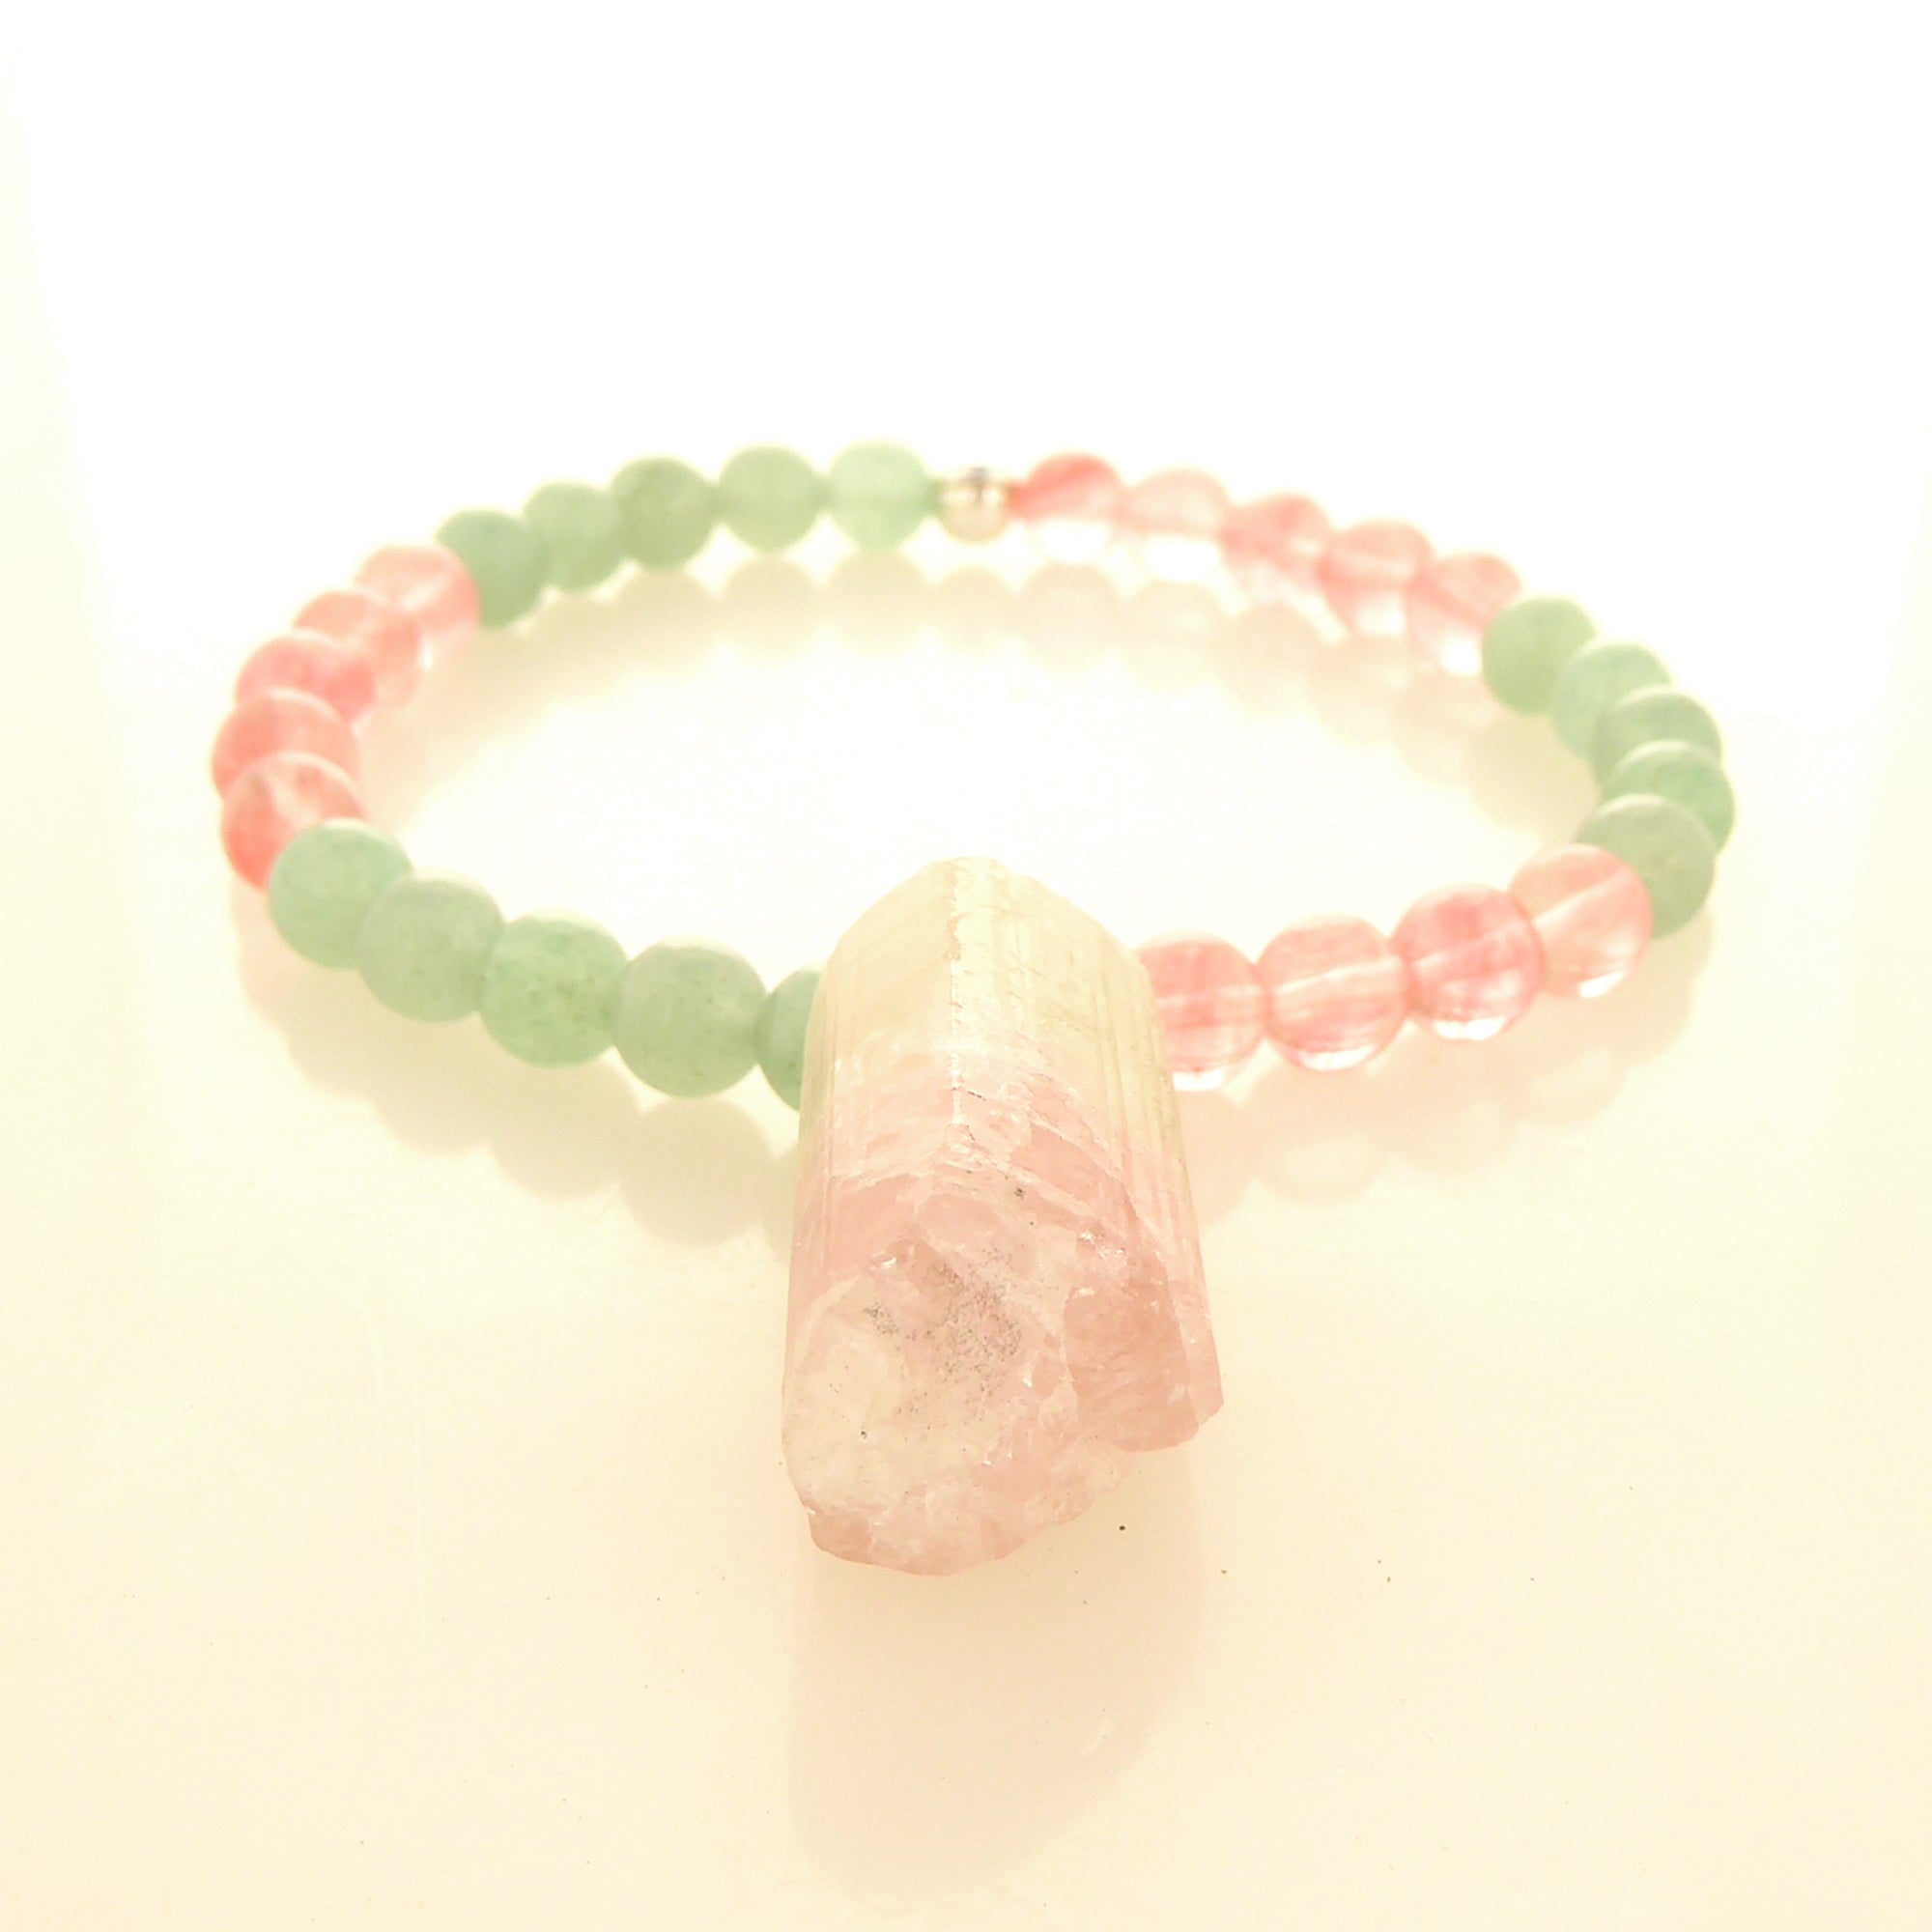 Watermelon tourmaline cherry quartz green aventurine bracelet by Jenny Dayco 3